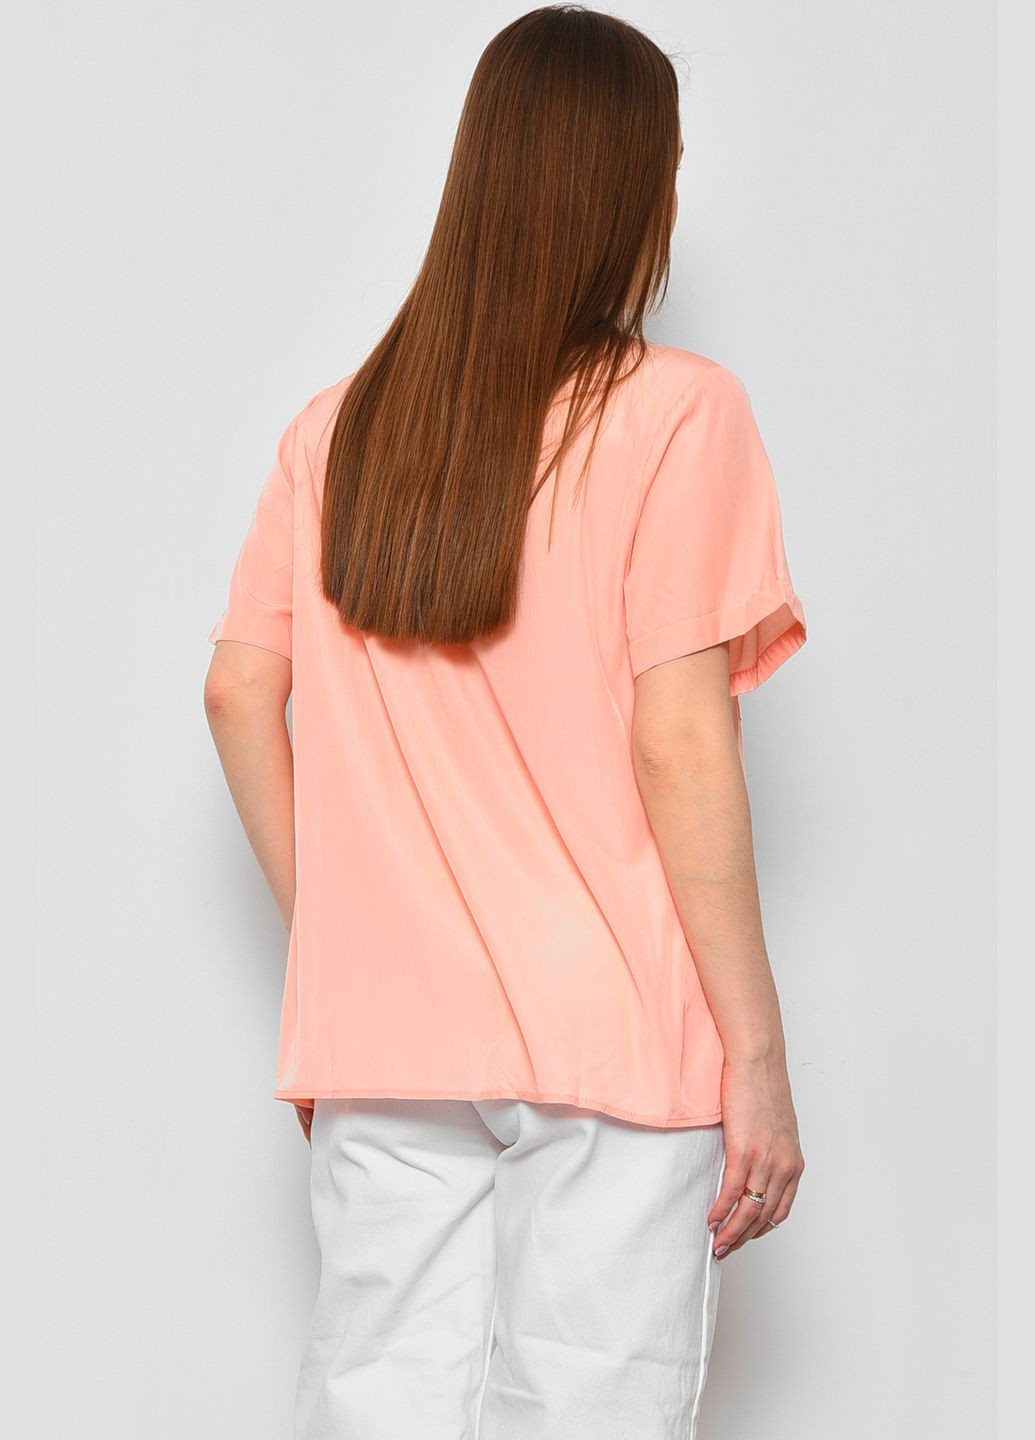 Персикова демісезонна блуза жіноча з коротким рукавом персикового кольору з баскою Let's Shop